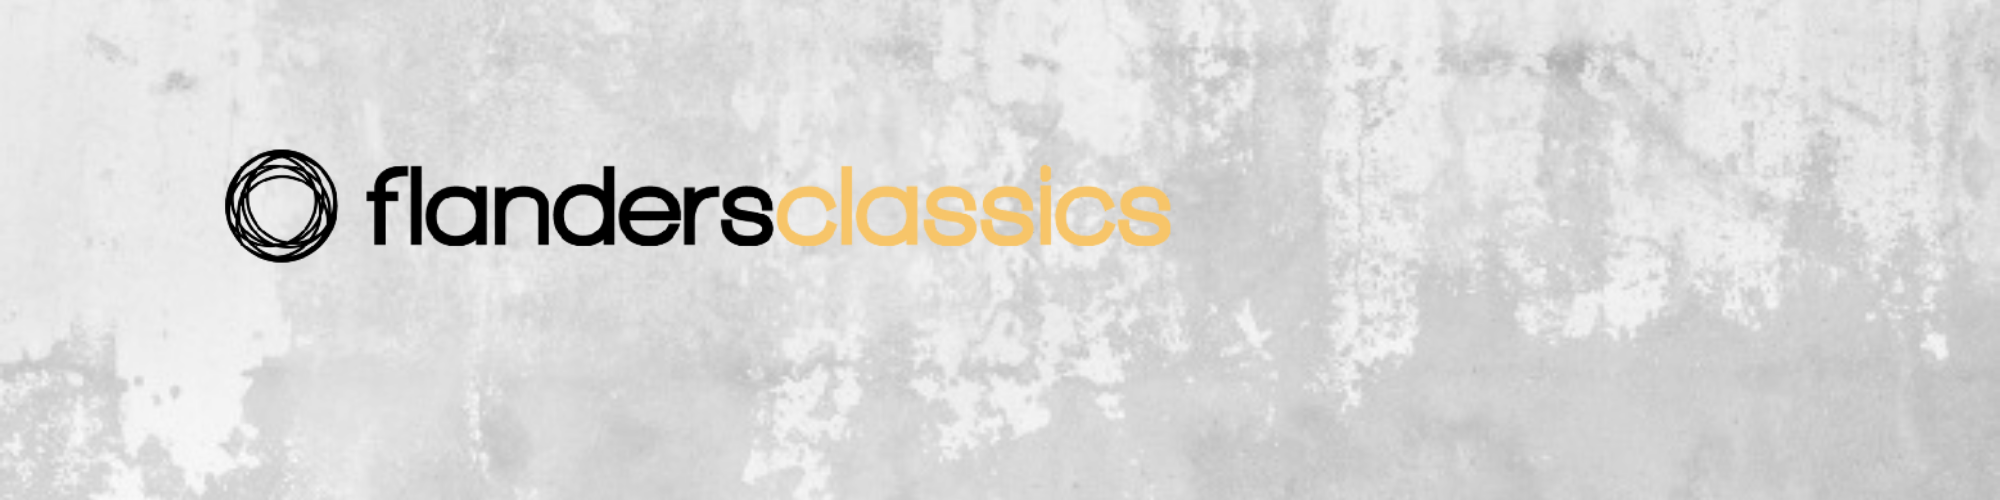 Flanders Classics banner